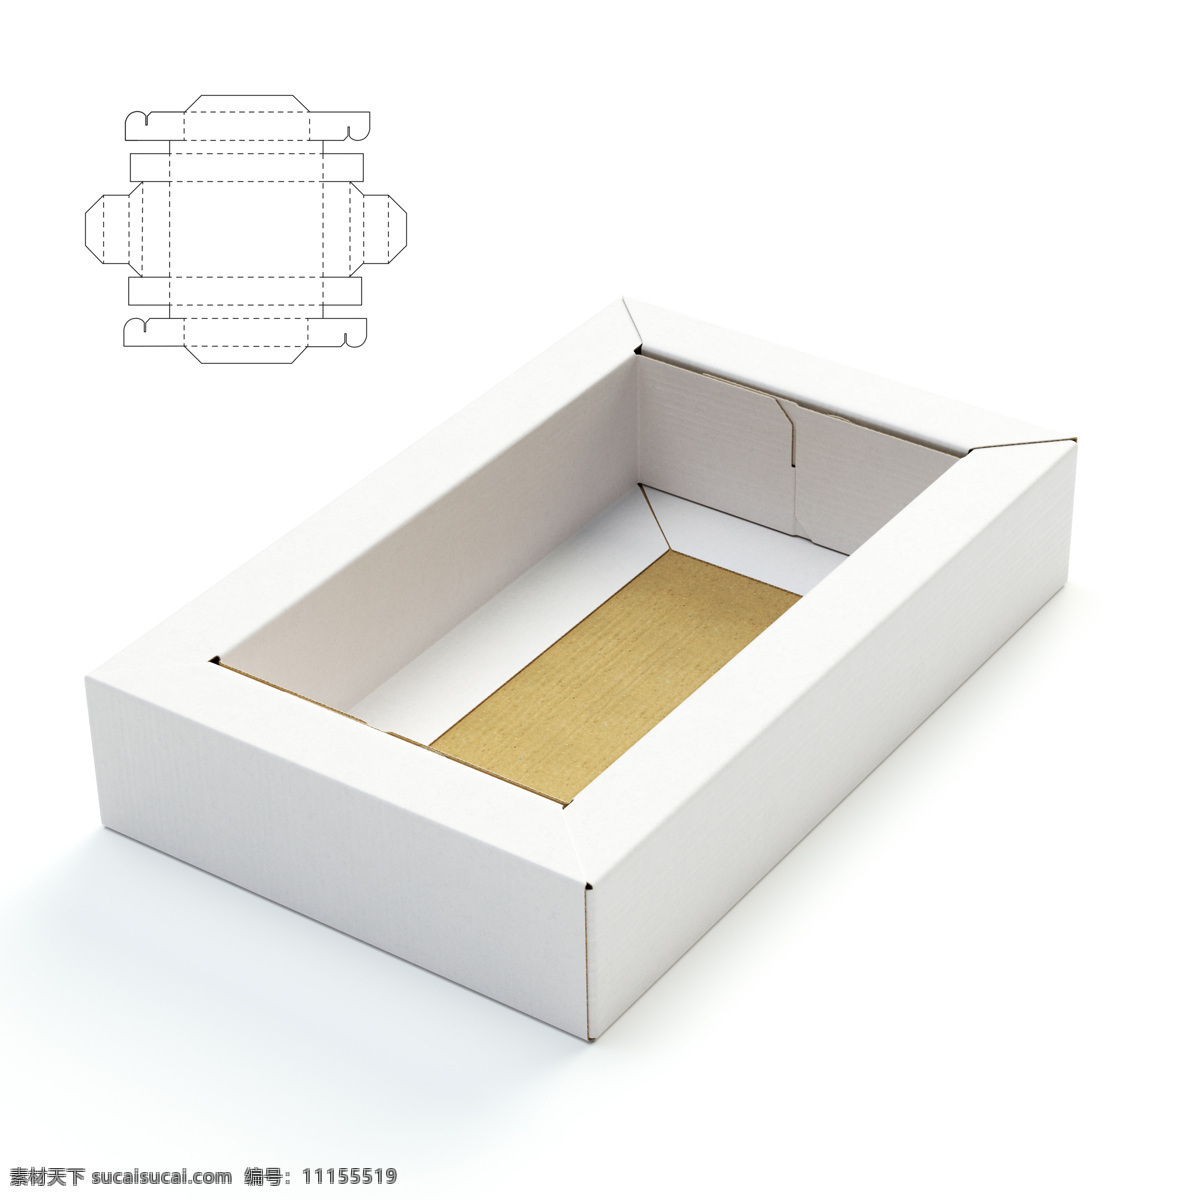 纸盒设计 包装盒设计 包装盒展开图 包装平面图 钢刀线 包装设计 包装效果图 创意 包装盒 其他类别 生活百科 白色